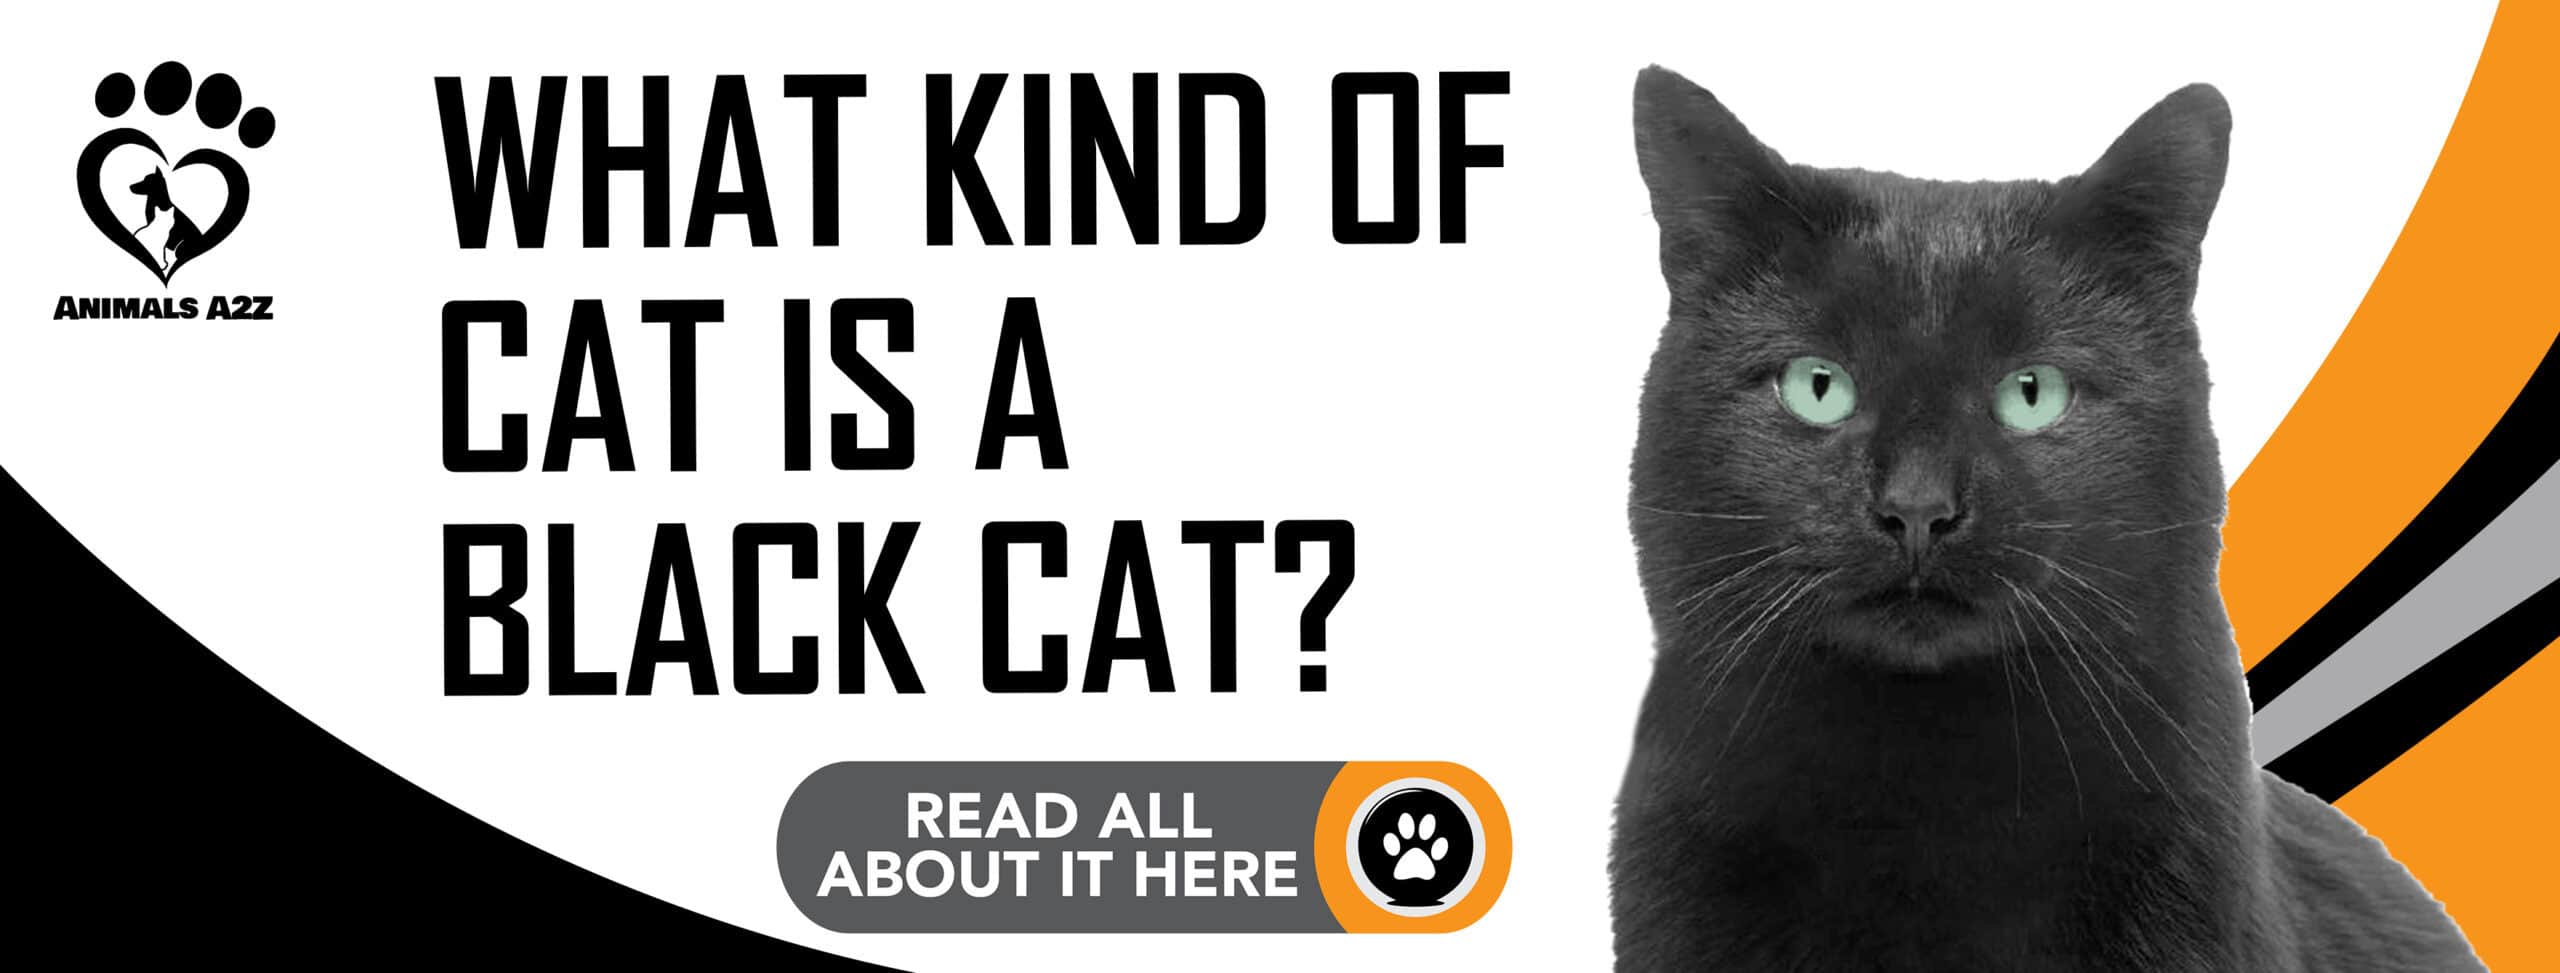 Hvilken slags kat er en sort kat?